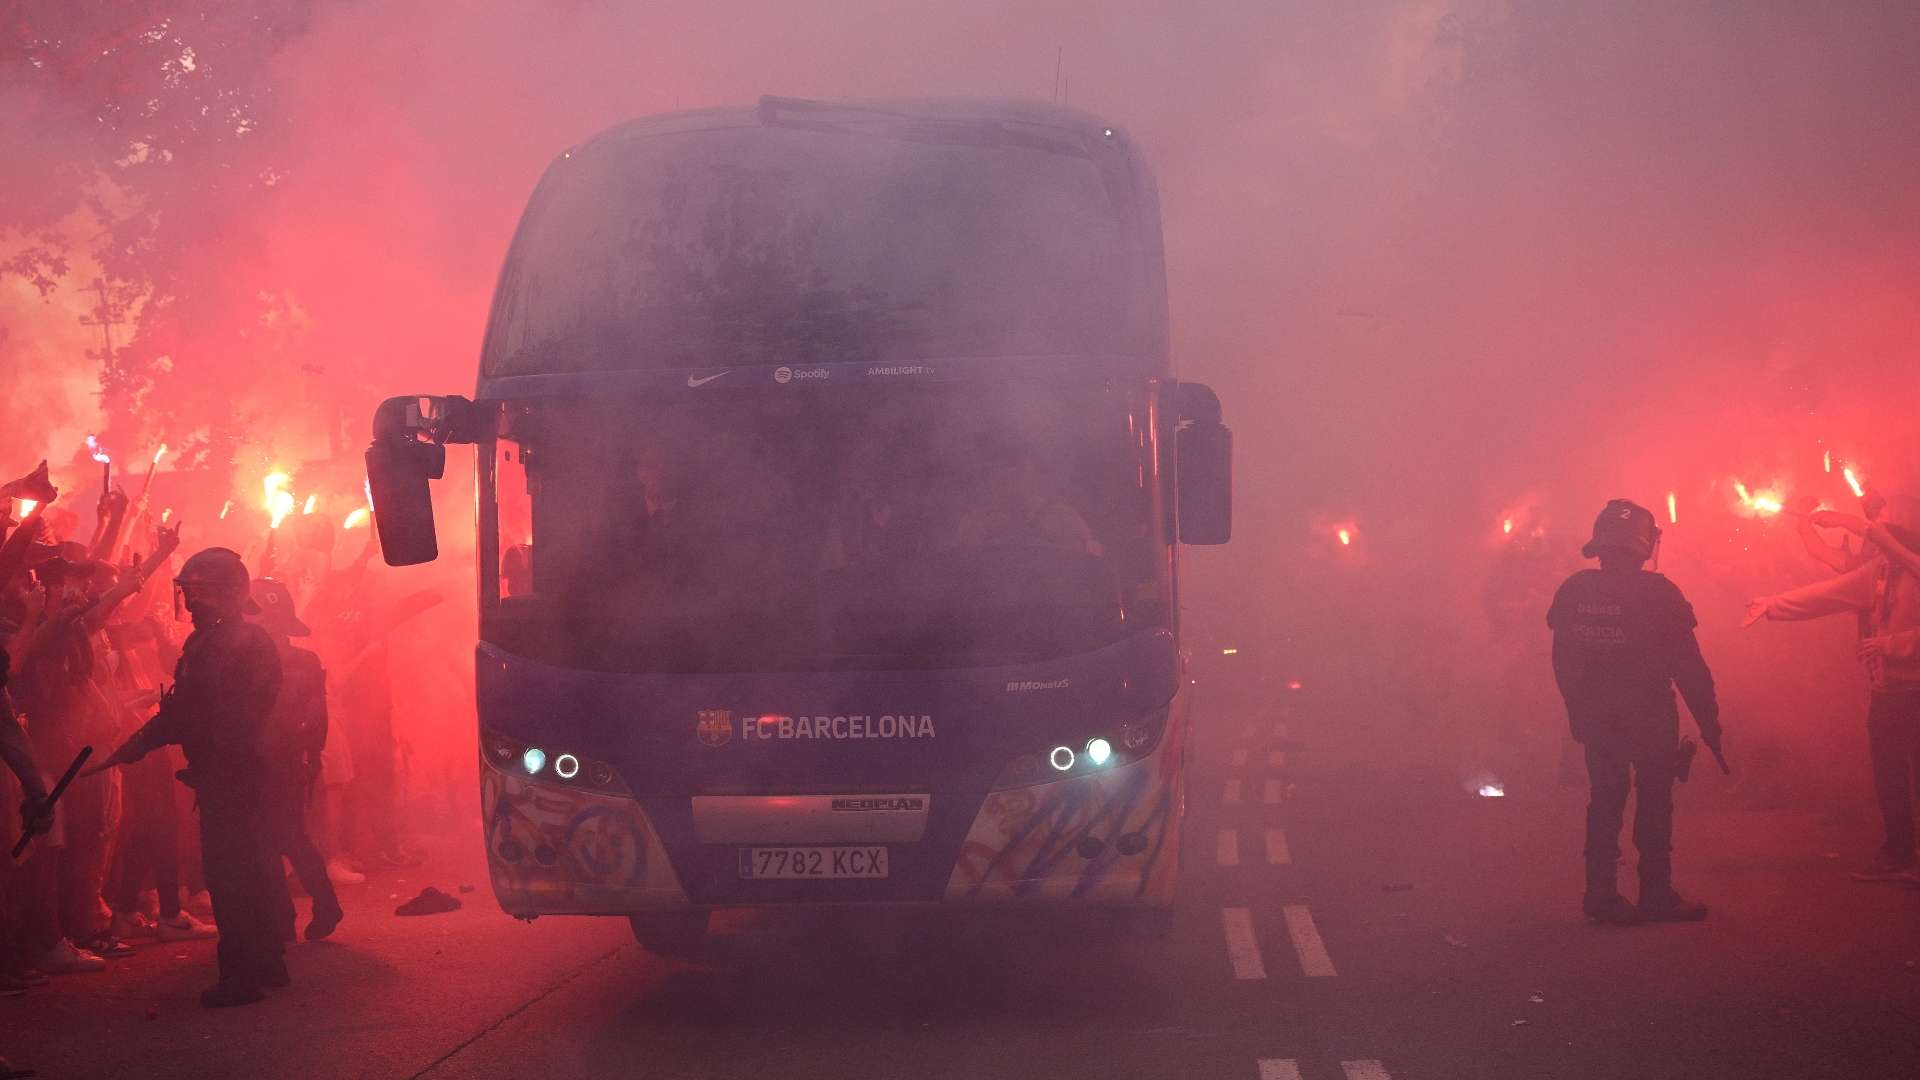 Barcellona bus